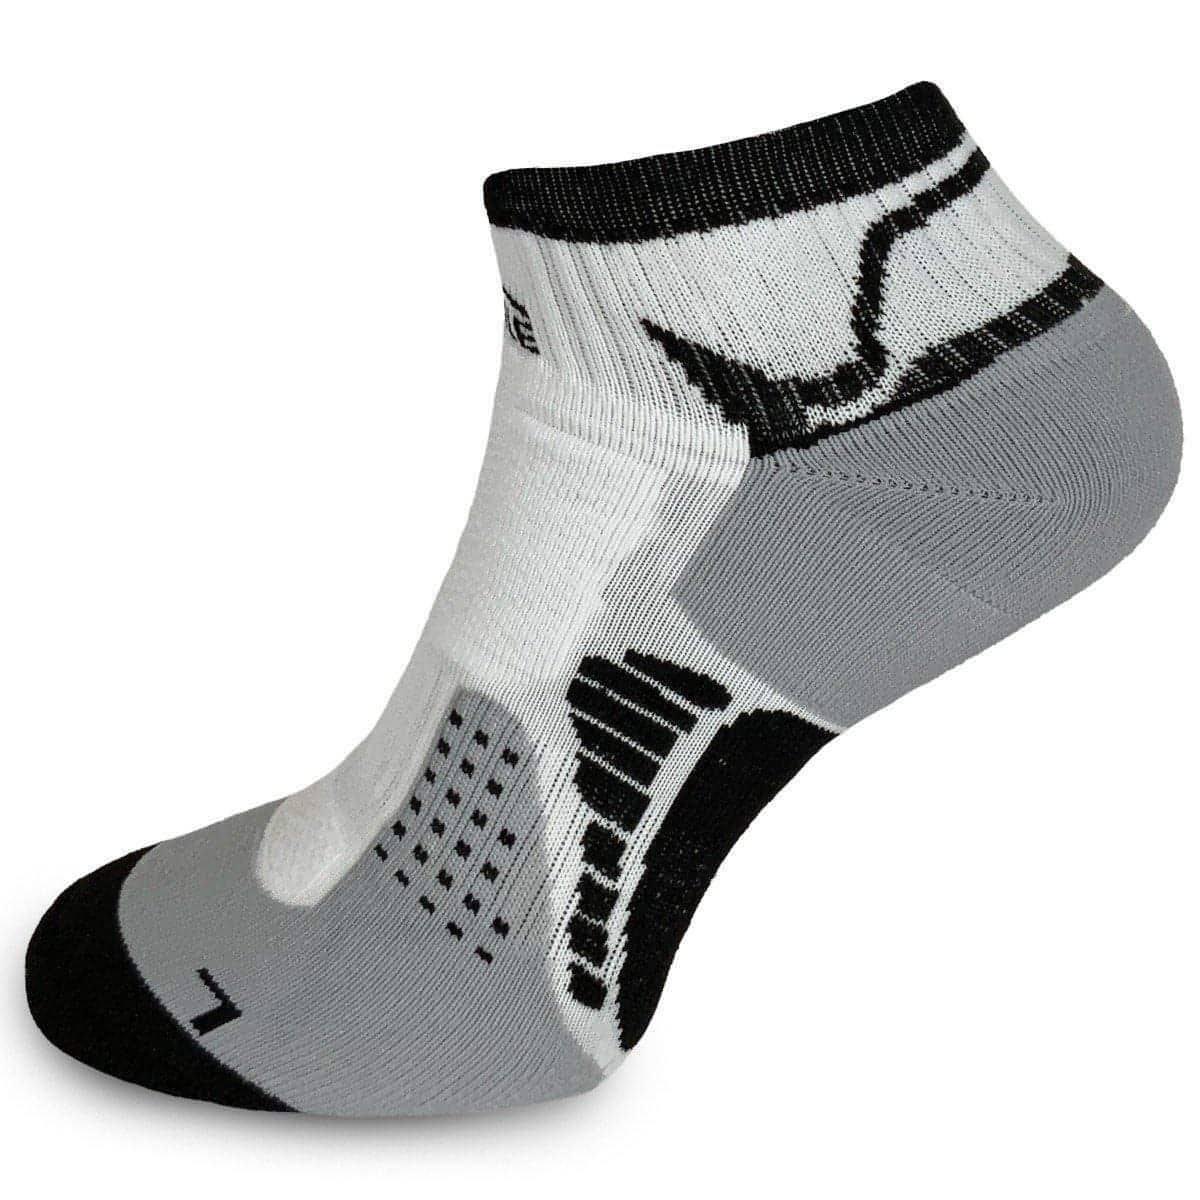 More Mile San Diego Running Socks - White - Start Fitness